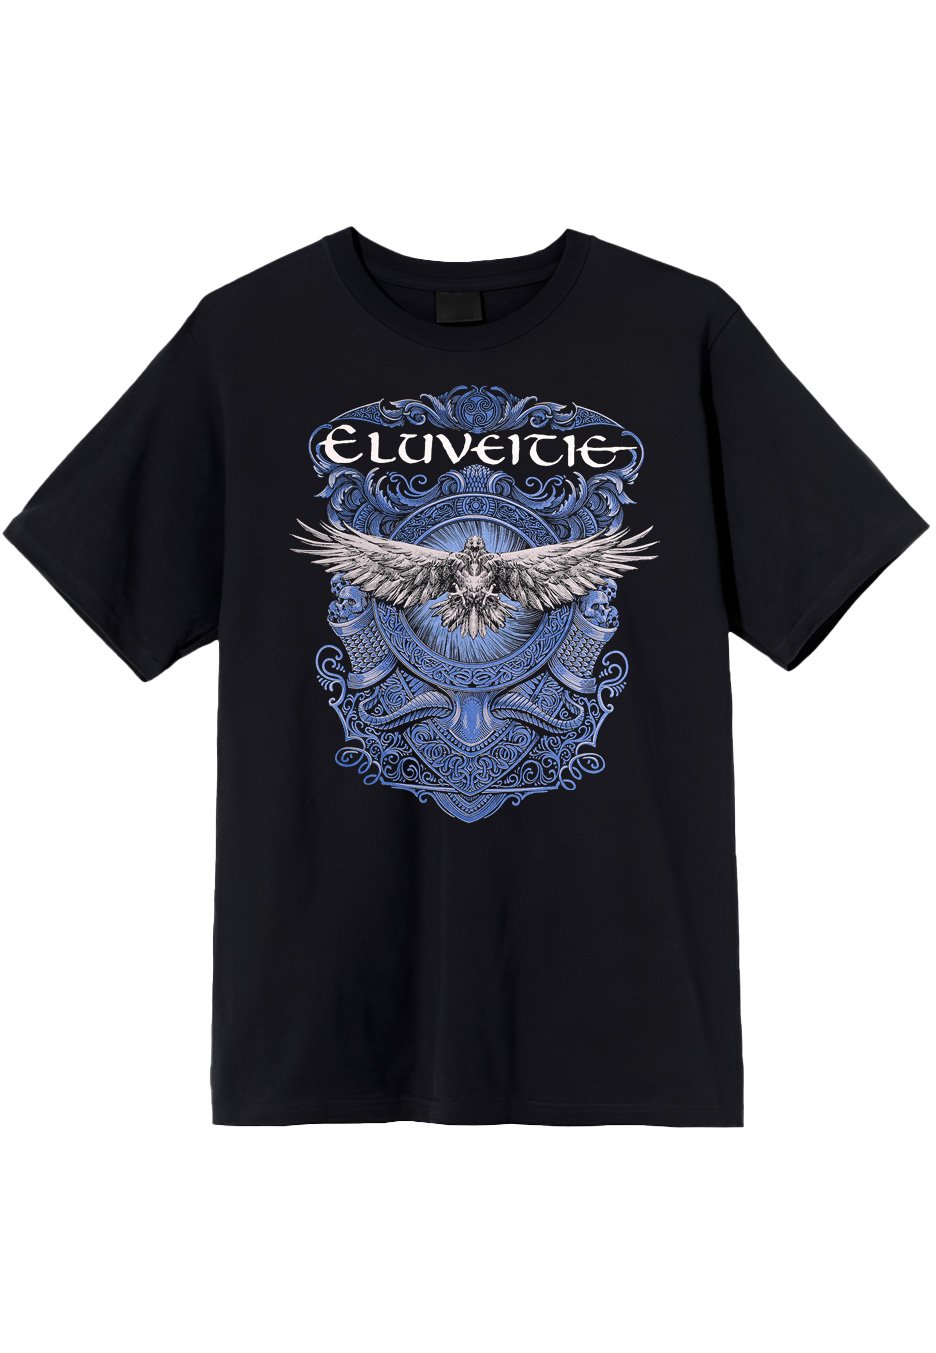 Eluveitie - Dark Raven - T-Shirt